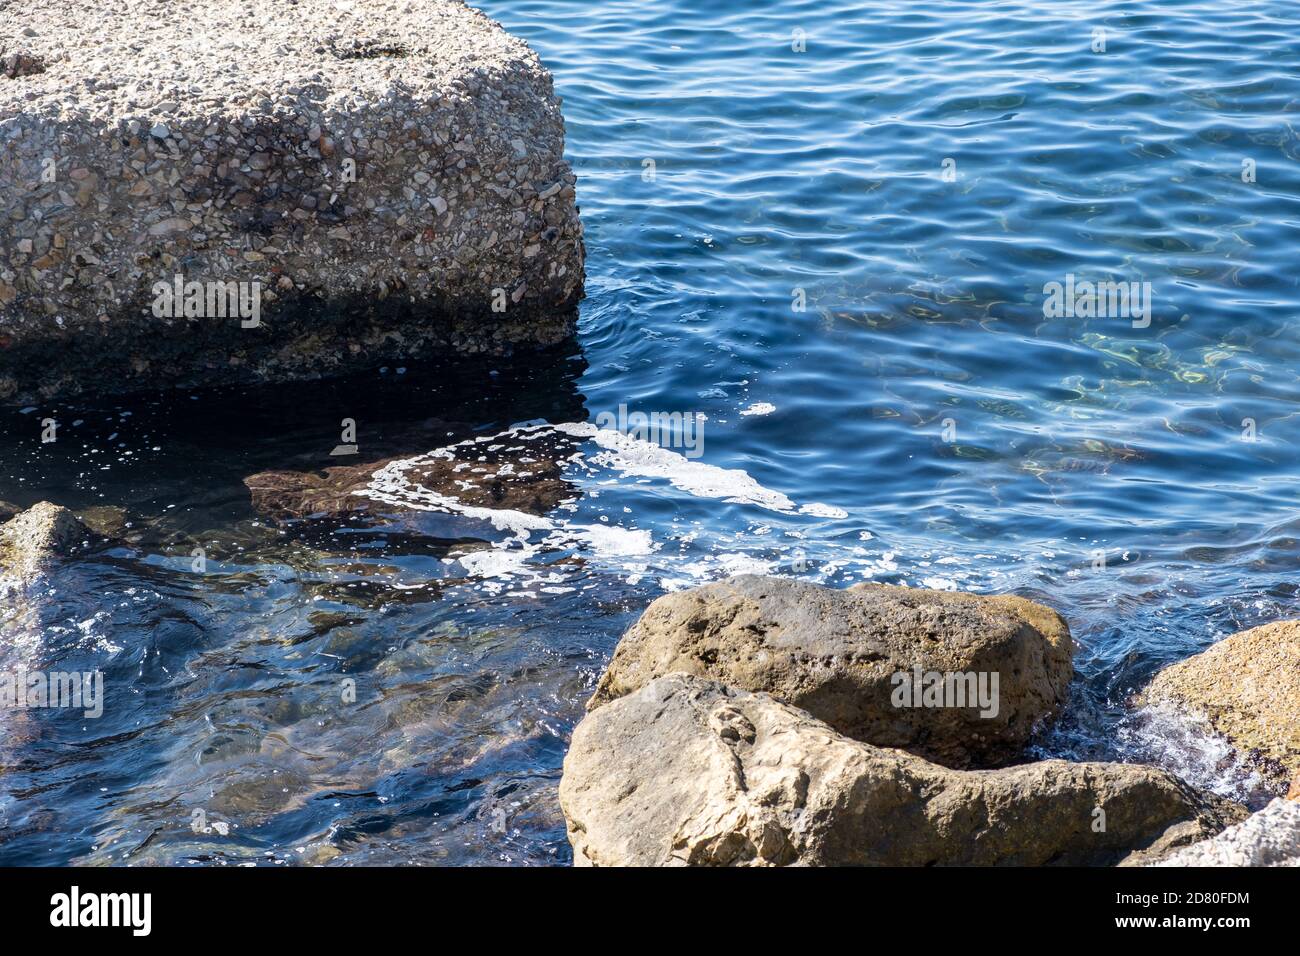 Concept de pollution de la mer. Mousse entre les roches sur la surface ensoleillée de l'eau, huile, pétrole, produits chimiques. Aucun lieu pour la vie n'est le résultat de dommages à l'envi Banque D'Images